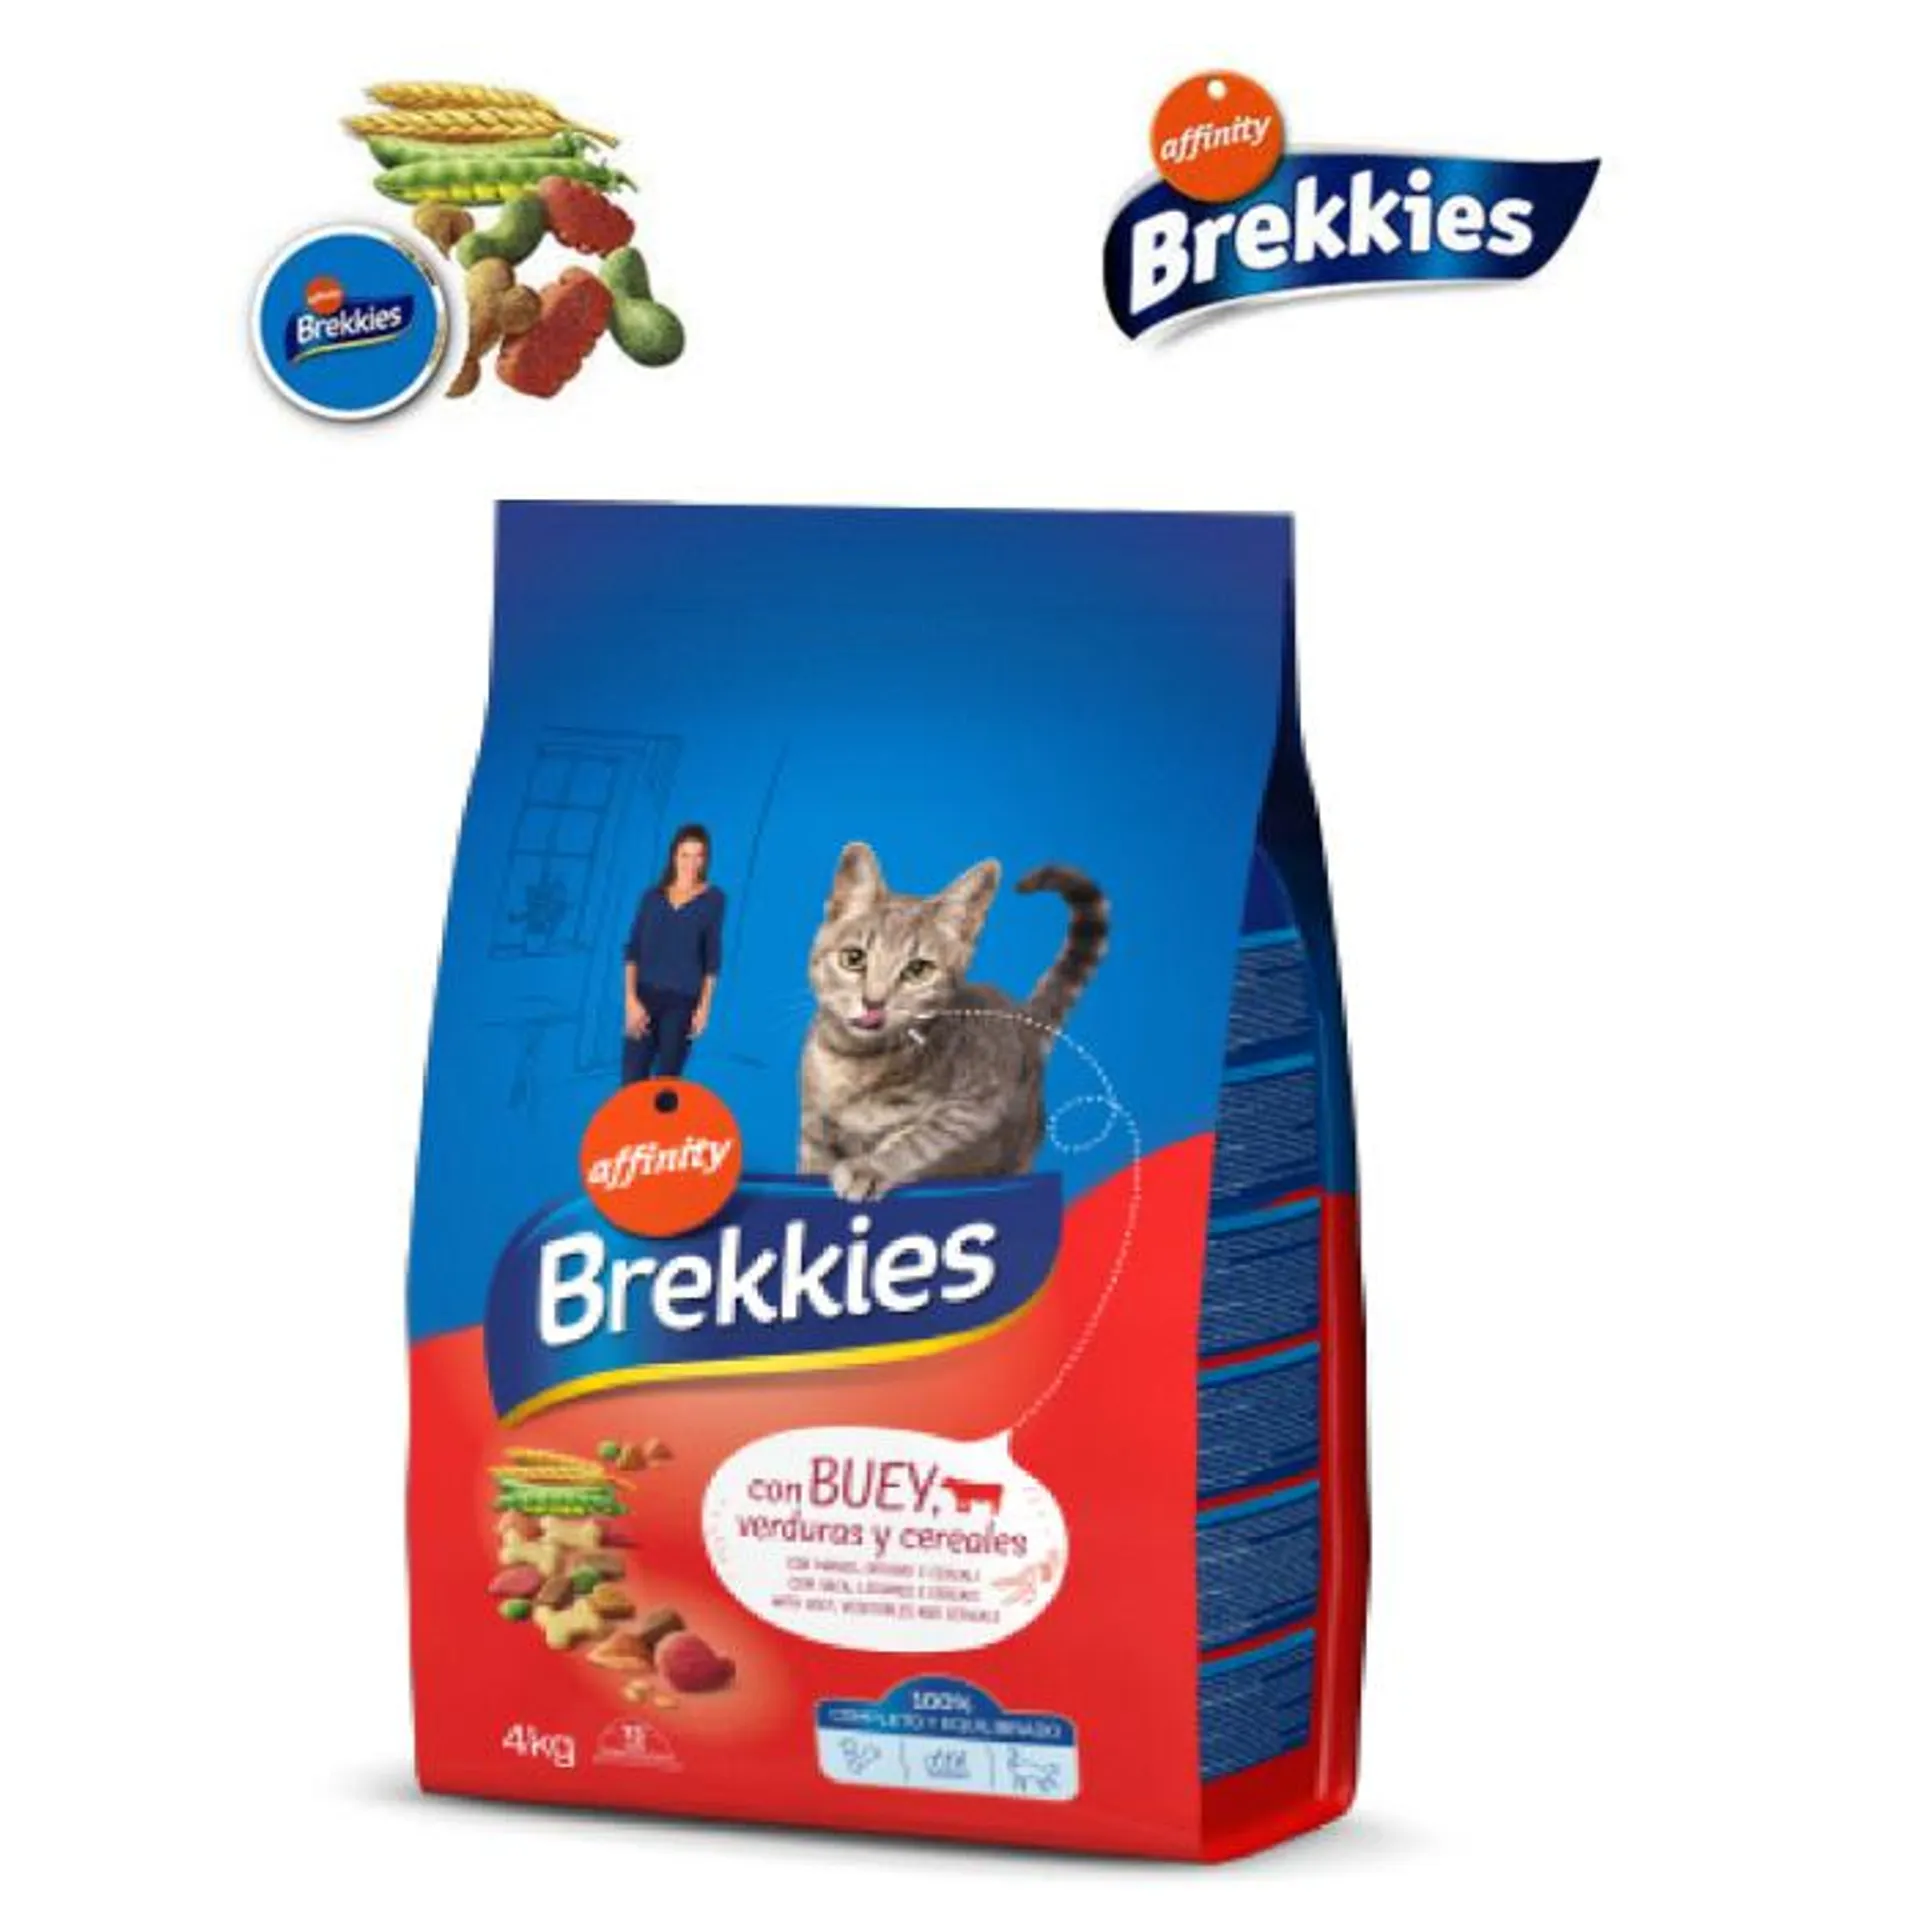 Brekkies pienso para gato Con buey verduras y cereales 4kg